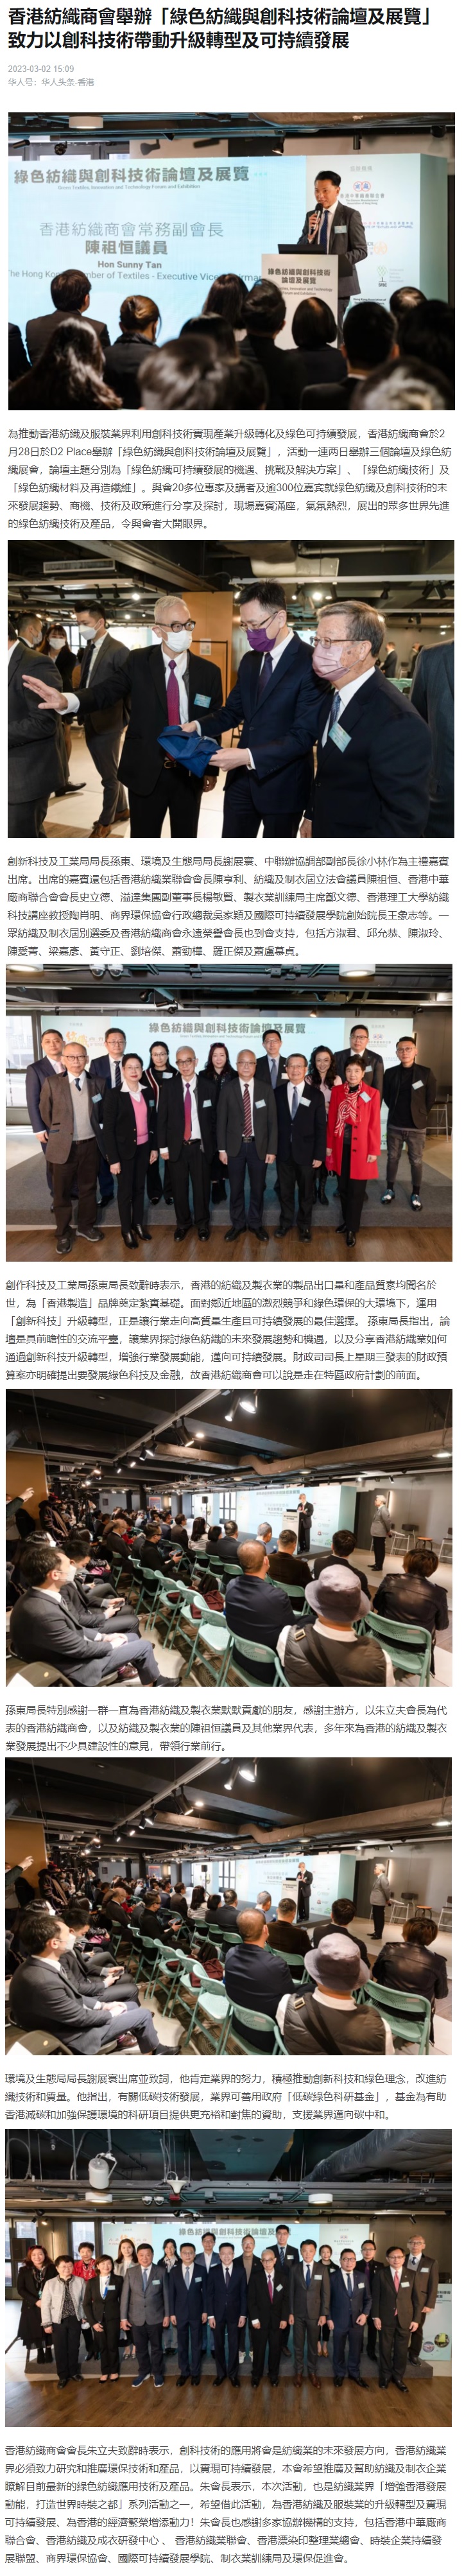 華人頭條報導 (2023-03-02) – 香港紡織商會舉辦「綠色紡織與創科技術論壇及展覽」 致力以創科技術帶動升級轉型及可持續發展